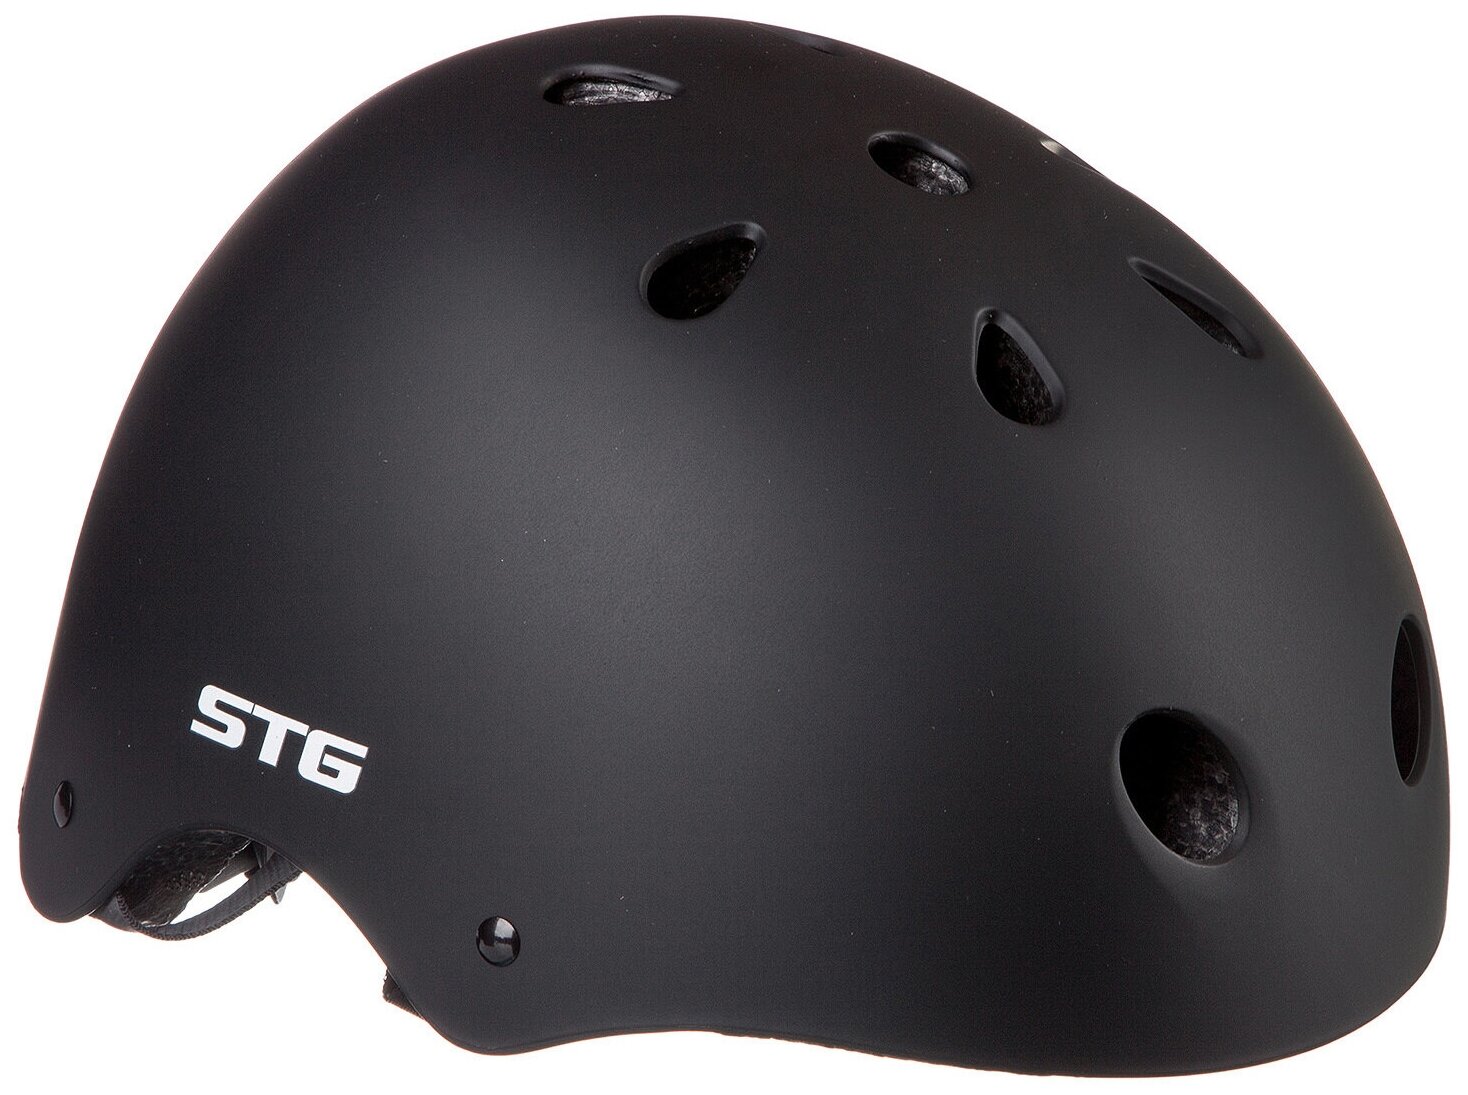 Шлем Stg , модель MTV12, размер XS(48-52)см черный, с фикс застежкой.